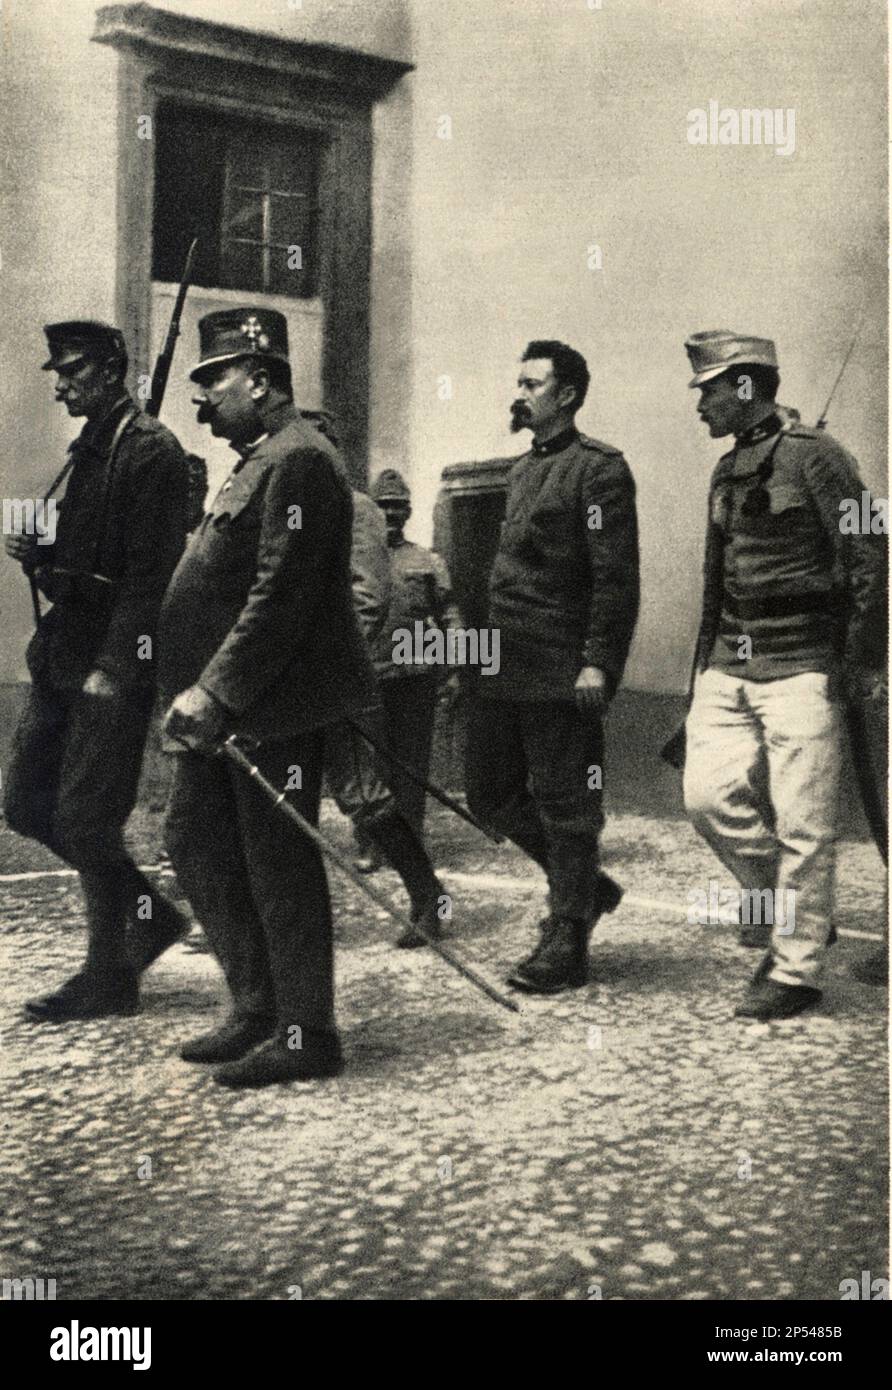 1916 , TRENTO , Trentino Alto Adige , ITALY : The italian patriot CESARE BATTISTI ( 1875 - 1916 ) prisoner of austrian soldiers at Castello del Bonconsiglio  just after the verdict of death sentence .  - Italia foto storiche - HISTORY  - WWI - PRIMA GUERRA MONDIALE - World War - Great War - Grande Guerra  - POLITICA - POLITIC - PATRIA - PATRIOTA - EROE - barba - beard - military uniform - uniforme divisa militare - prigioniero - condannato a morte - condanna  ----  Archivio GBB Stock Photo